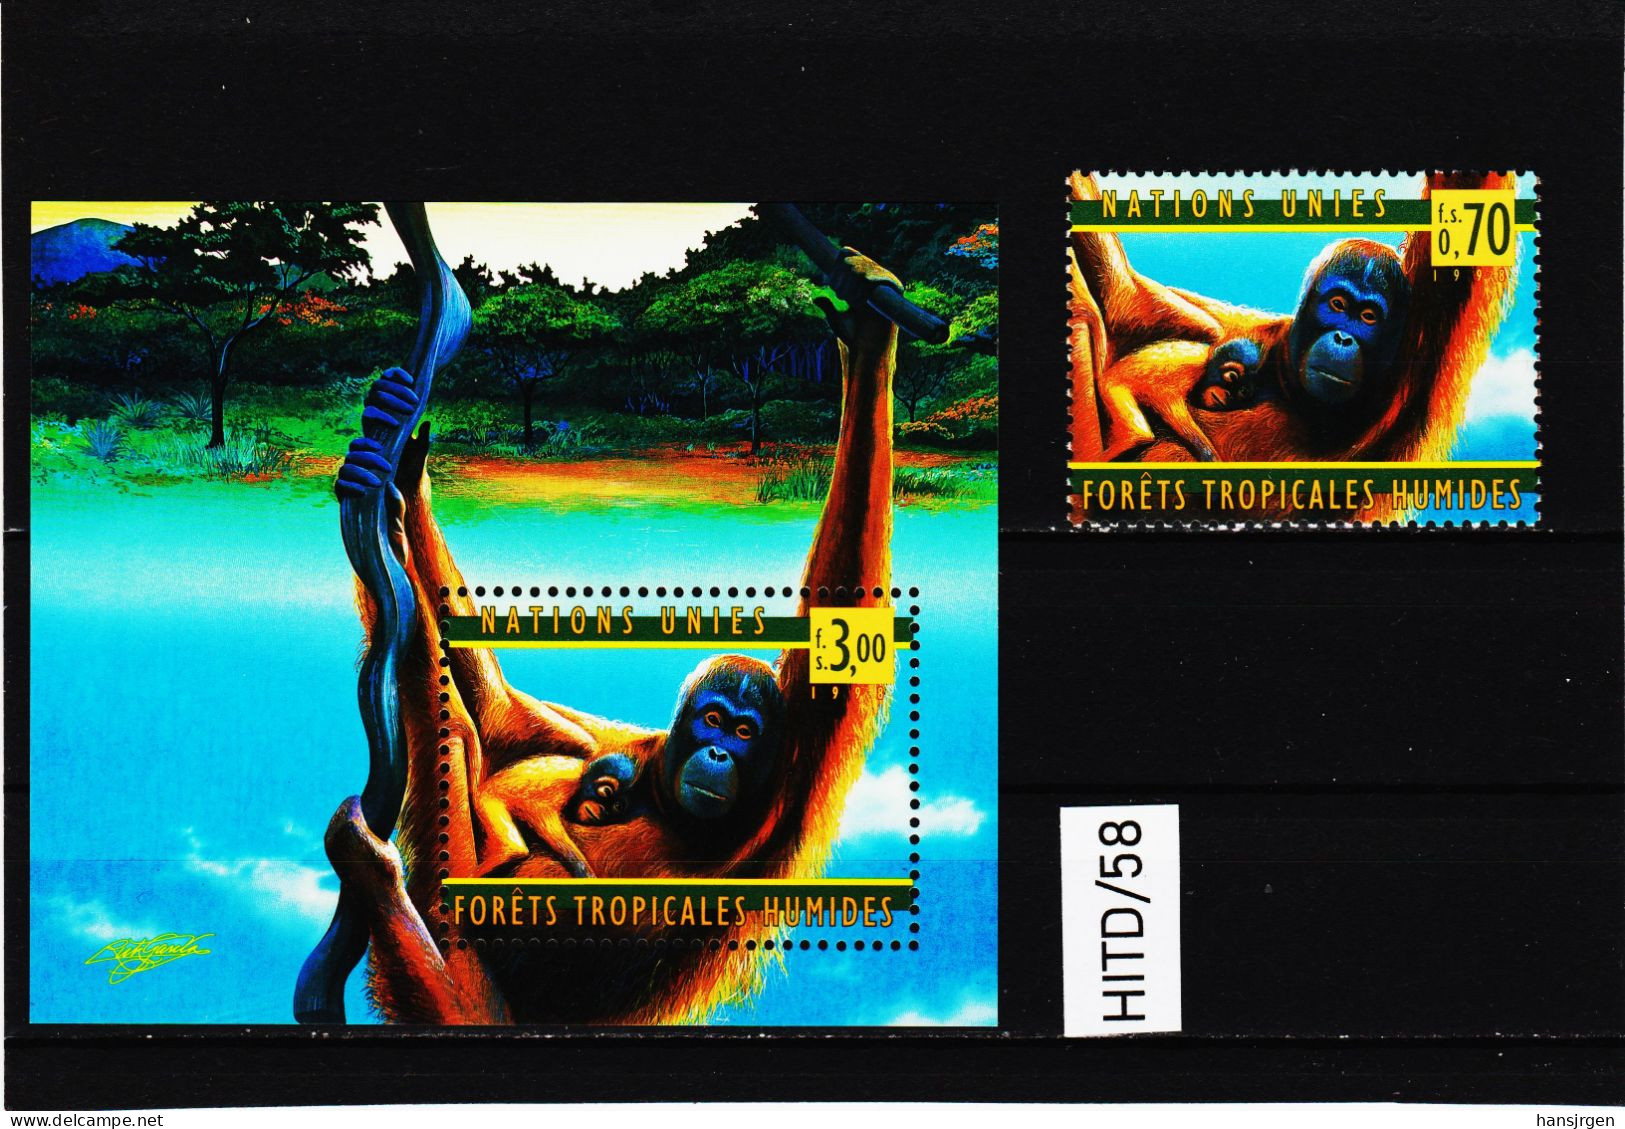 HITD/58 UNO GENF 1998  Michl  346 + Block 10  ** Postfrisch SIEHE ABBILDUNG - Unused Stamps